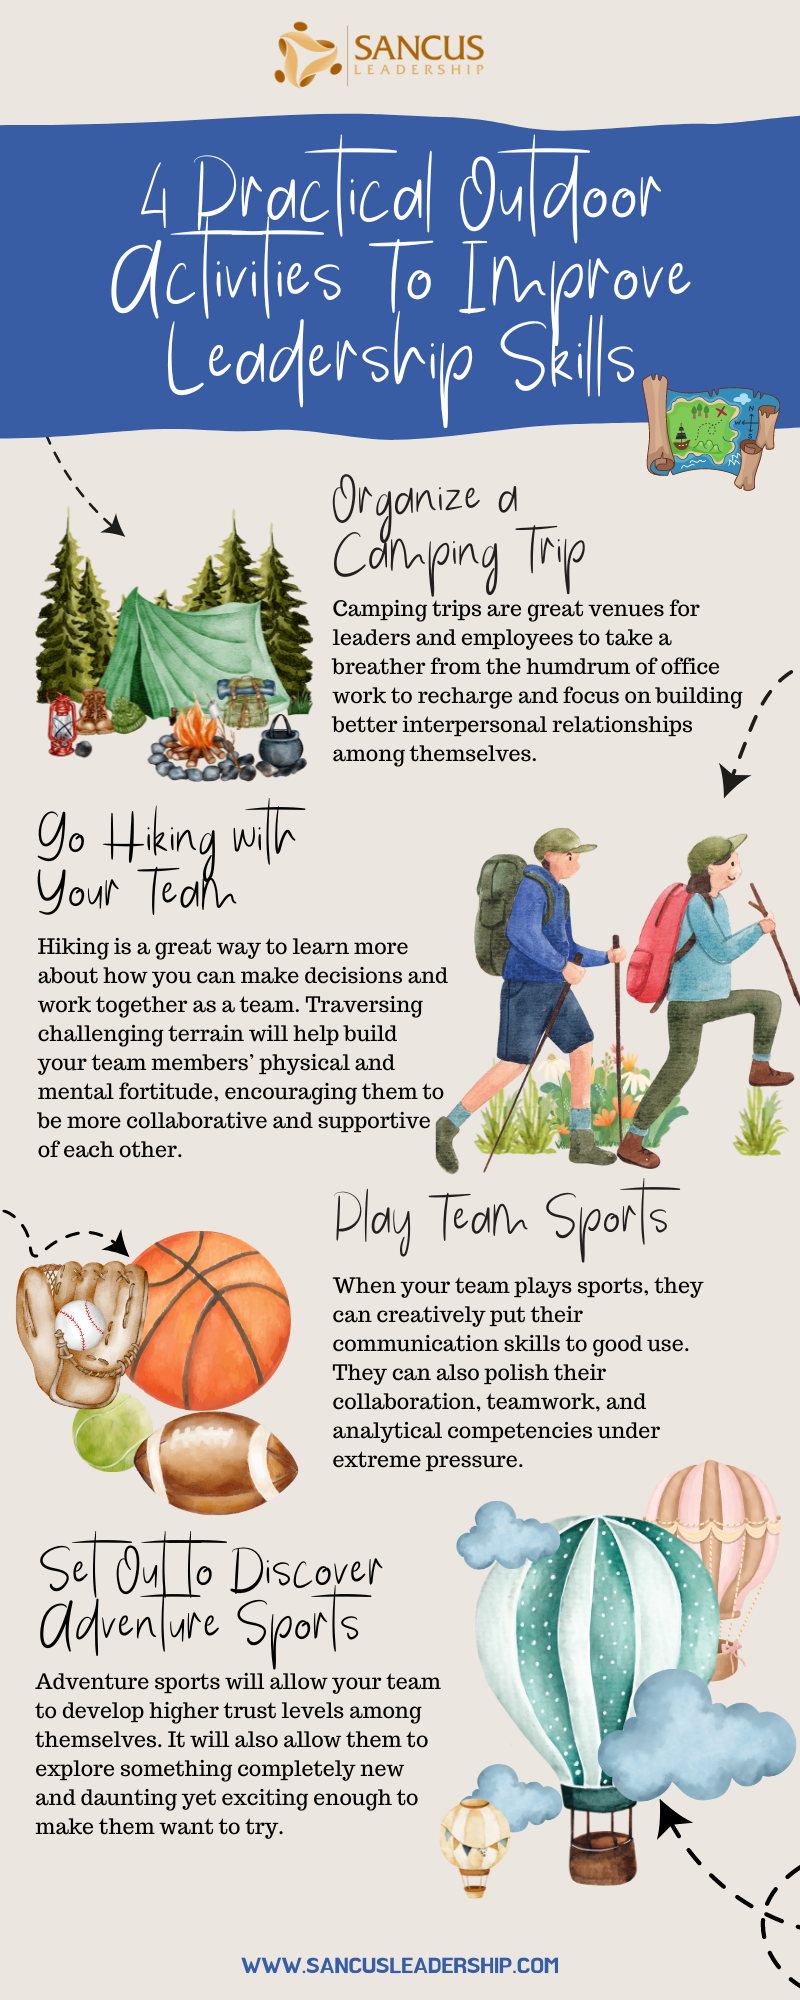 4 practical outdoor activities to improve leadership skills